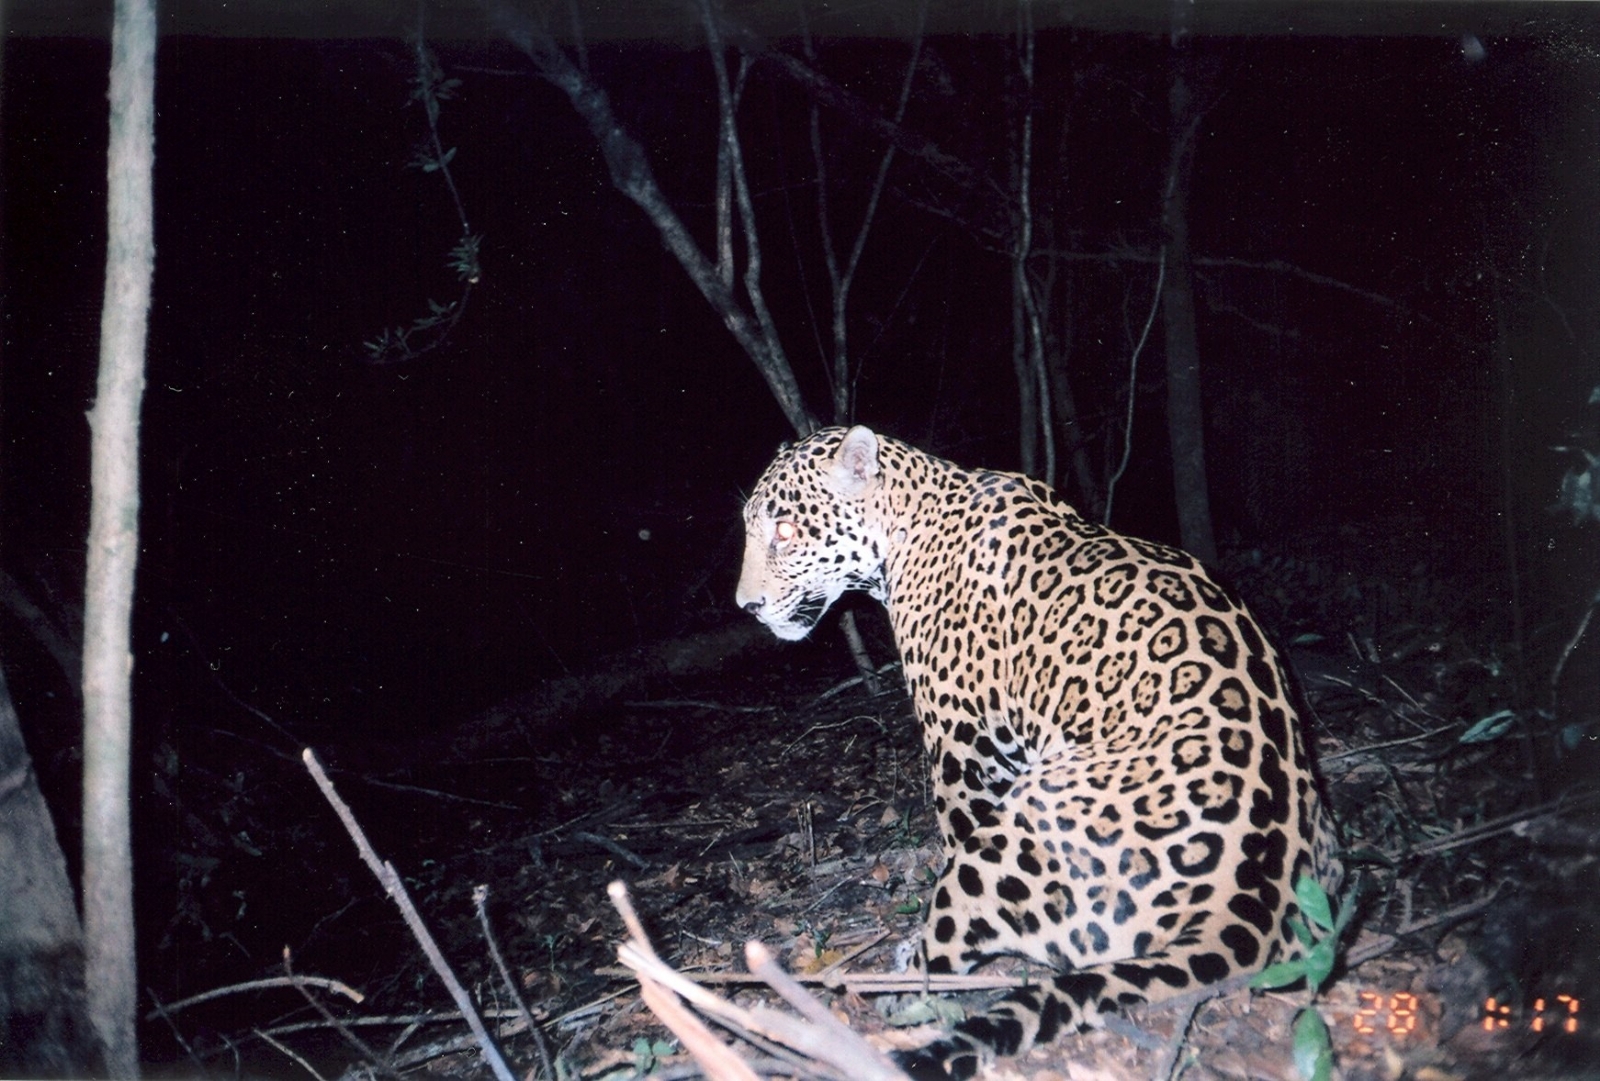 Deforestación obliga a jaguares campechanos a migrar a campos ganaderos: Greenpeace